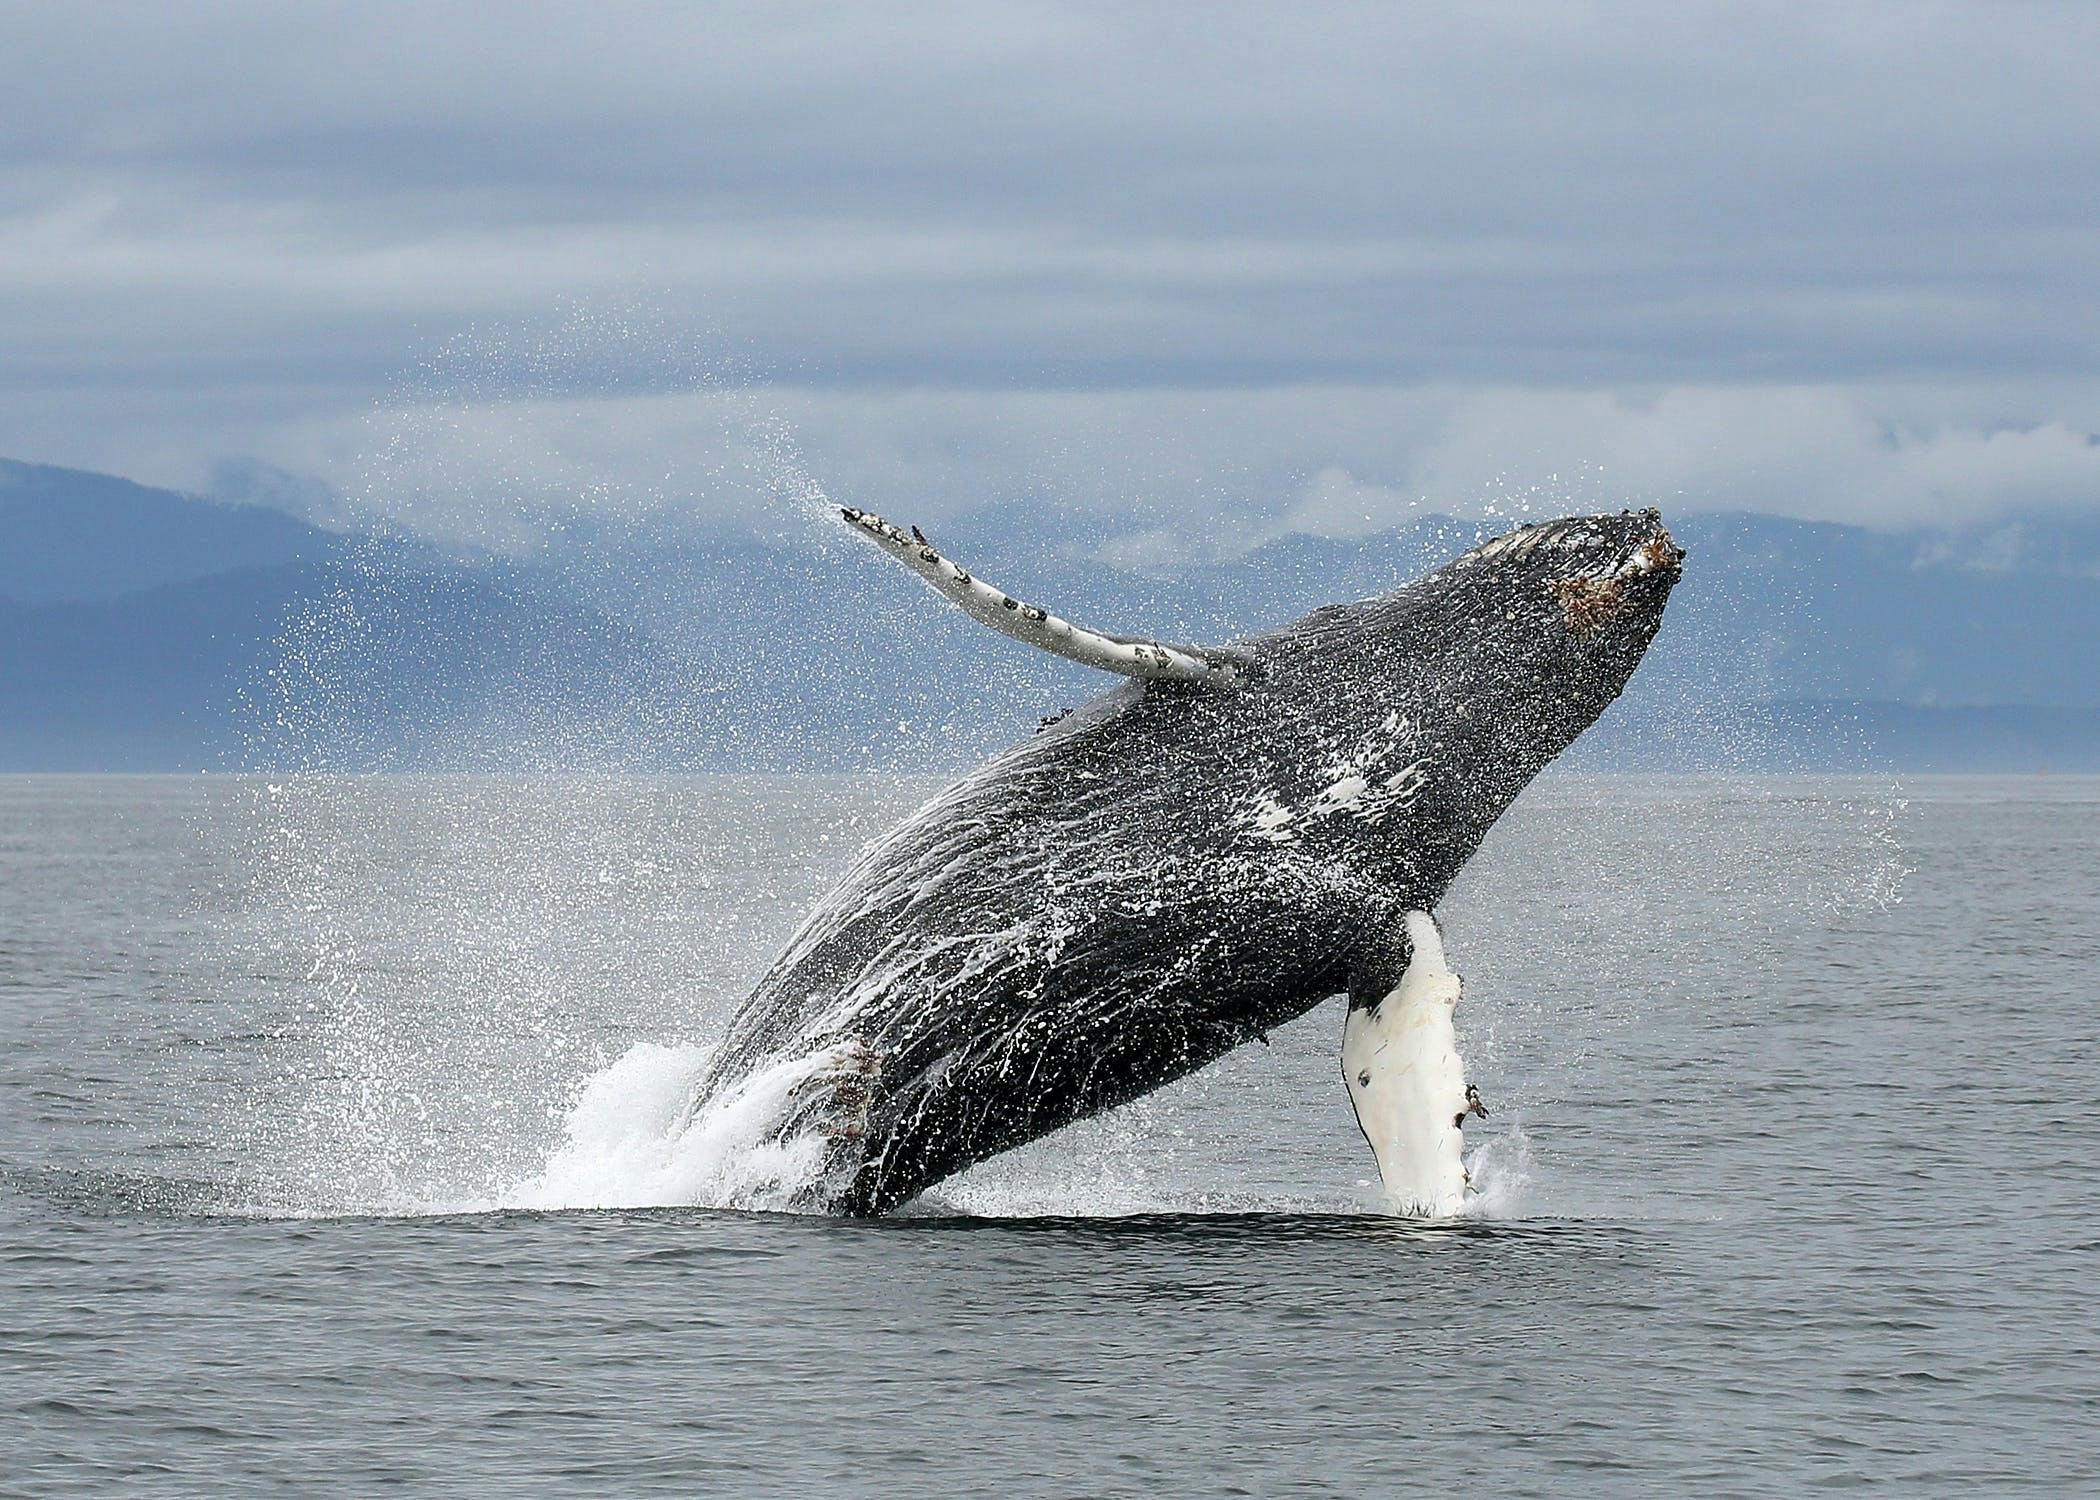 Excursão de luxo de um dia para observação de baleias